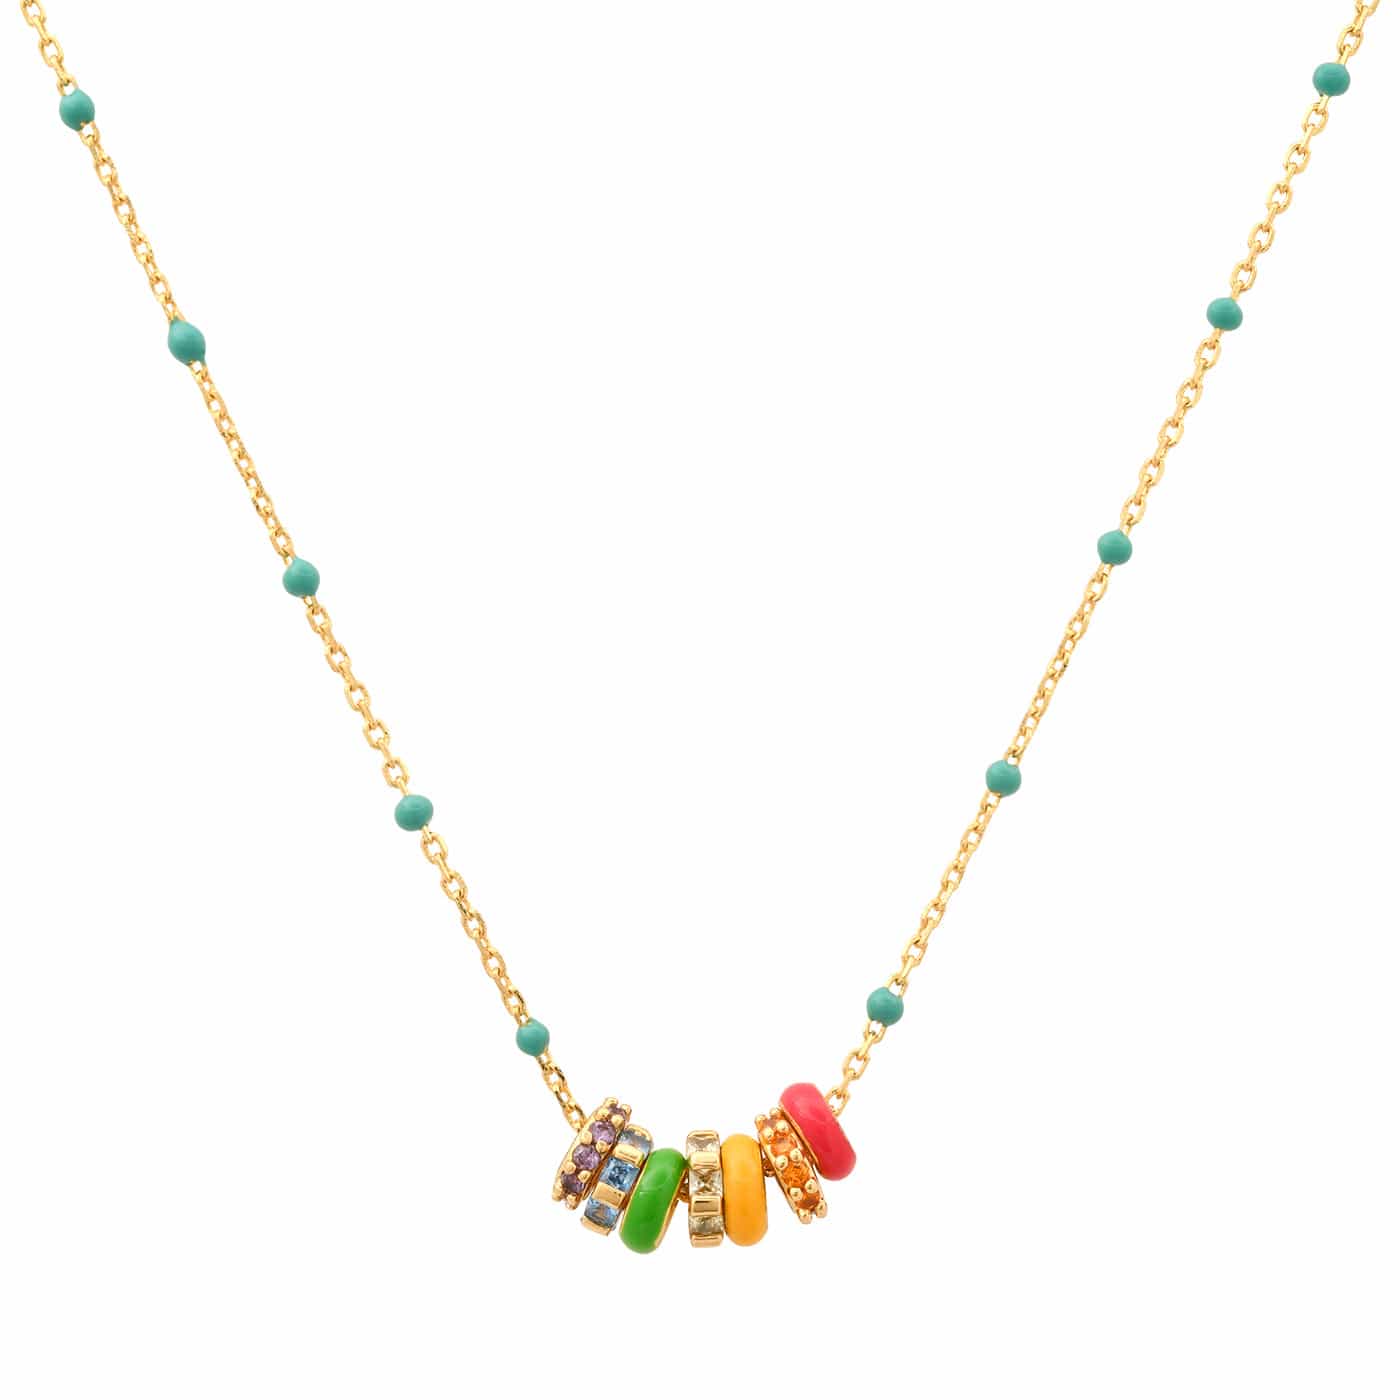 TAI JEWELRY Necklace Rainbow Enamel Charm Necklace